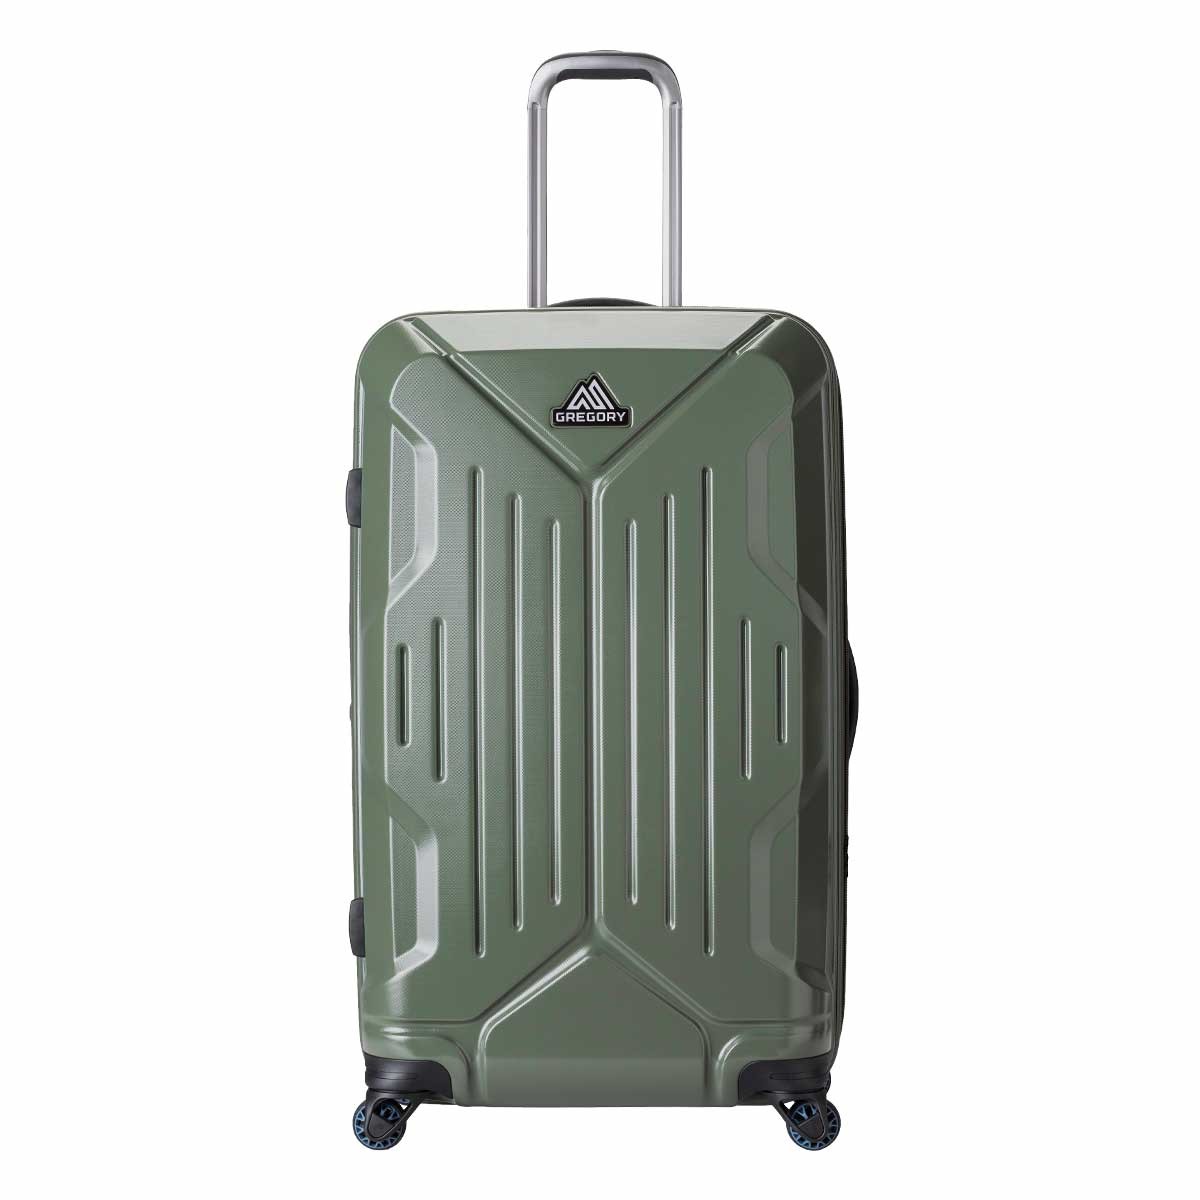 キャリーバッグ グレゴリー GREGORY スーツケース LLサイズ ハード 旅行 バッグ キャリーケース 拡張 大容量 メンズ レディース 男女兼用  ブランド